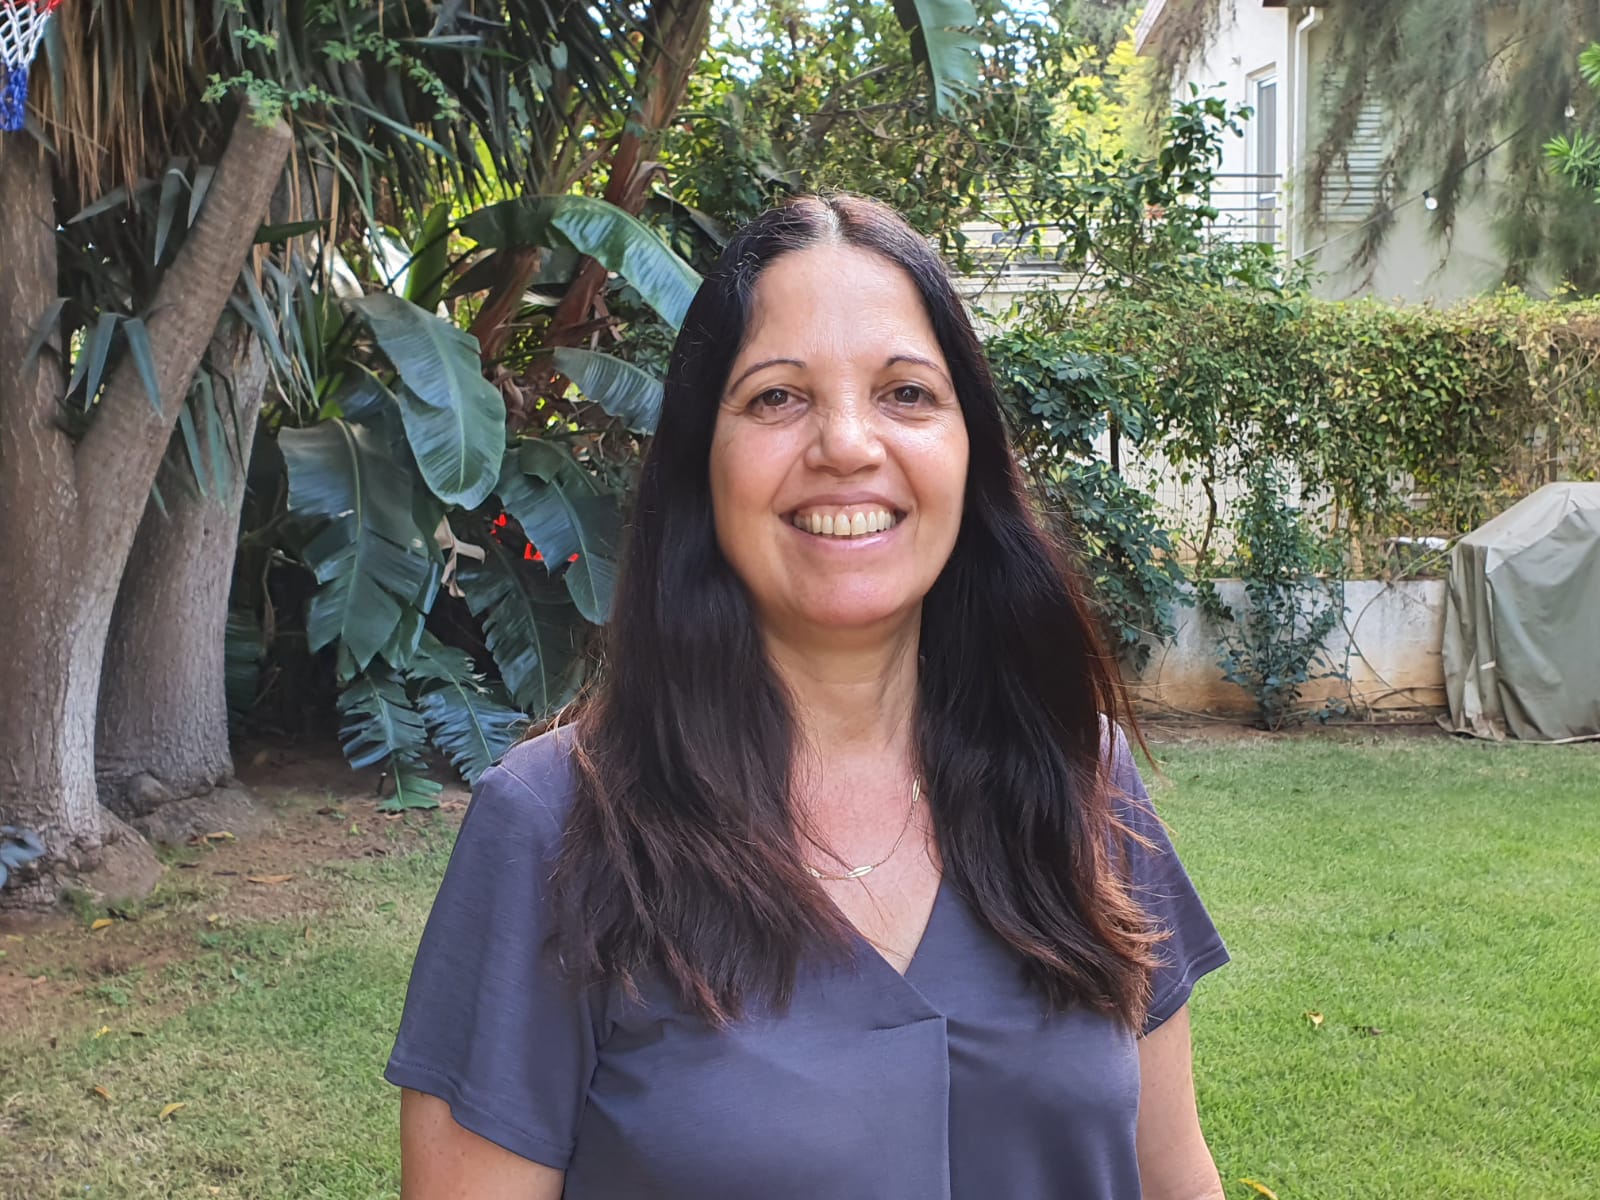 חילופי משמרות: זיוה גבאי מלכא נבחרה לכהן כמנהלת החדשה של האגף לשירותים חברתיים בעיריית גבעתיים, במקומה של מירי פרחי